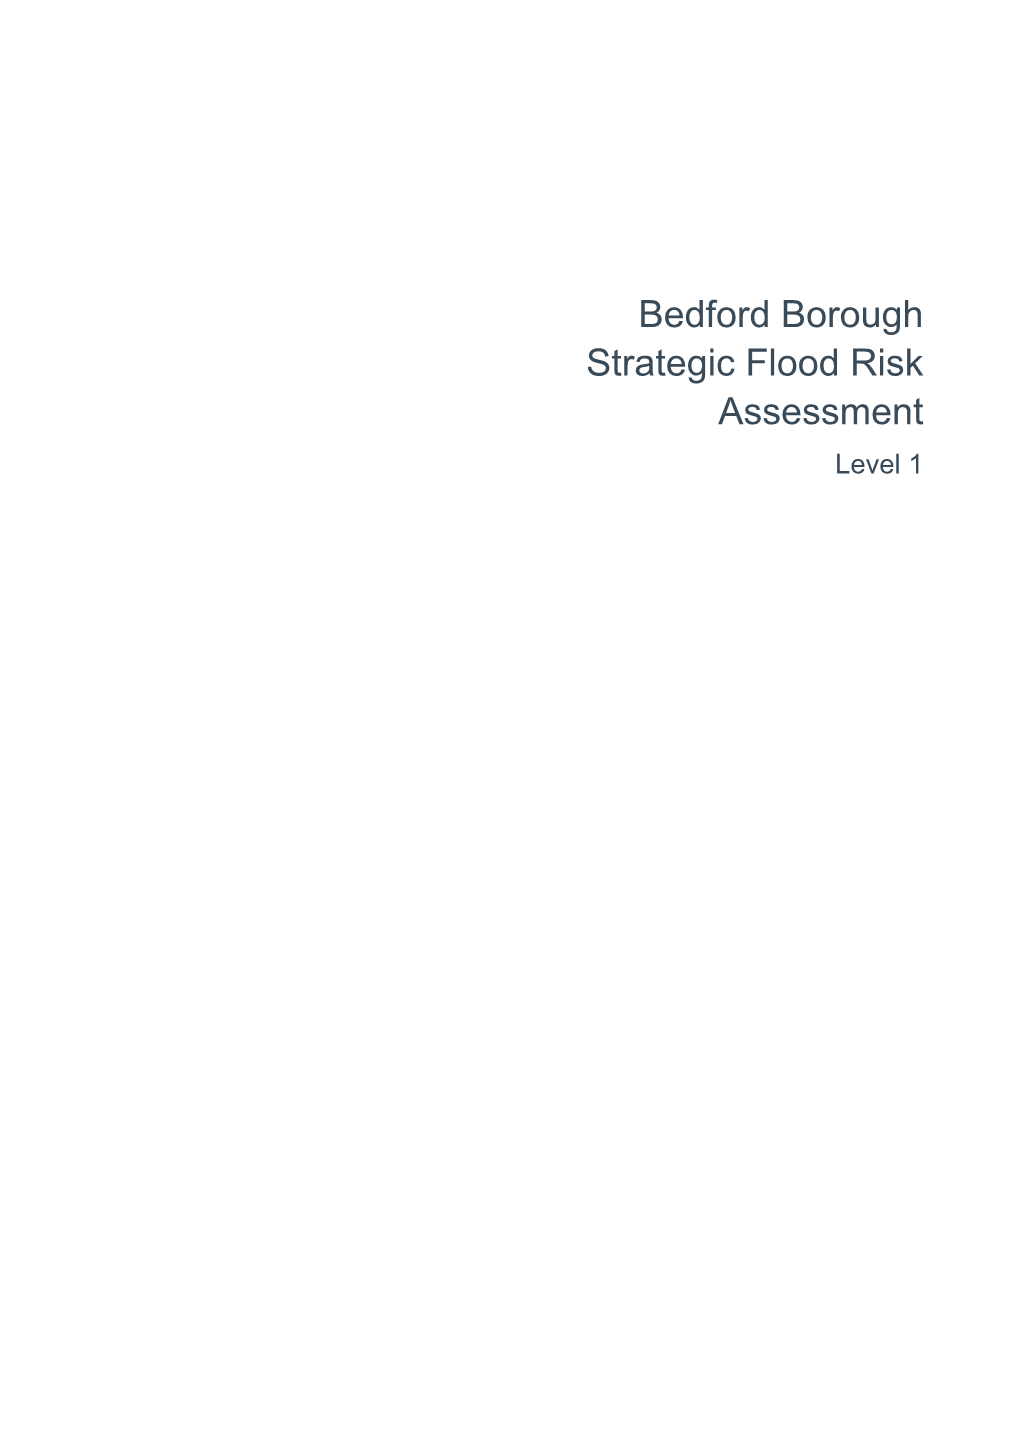 Bedford Borough Strategic Flood Risk Assessment Level 1